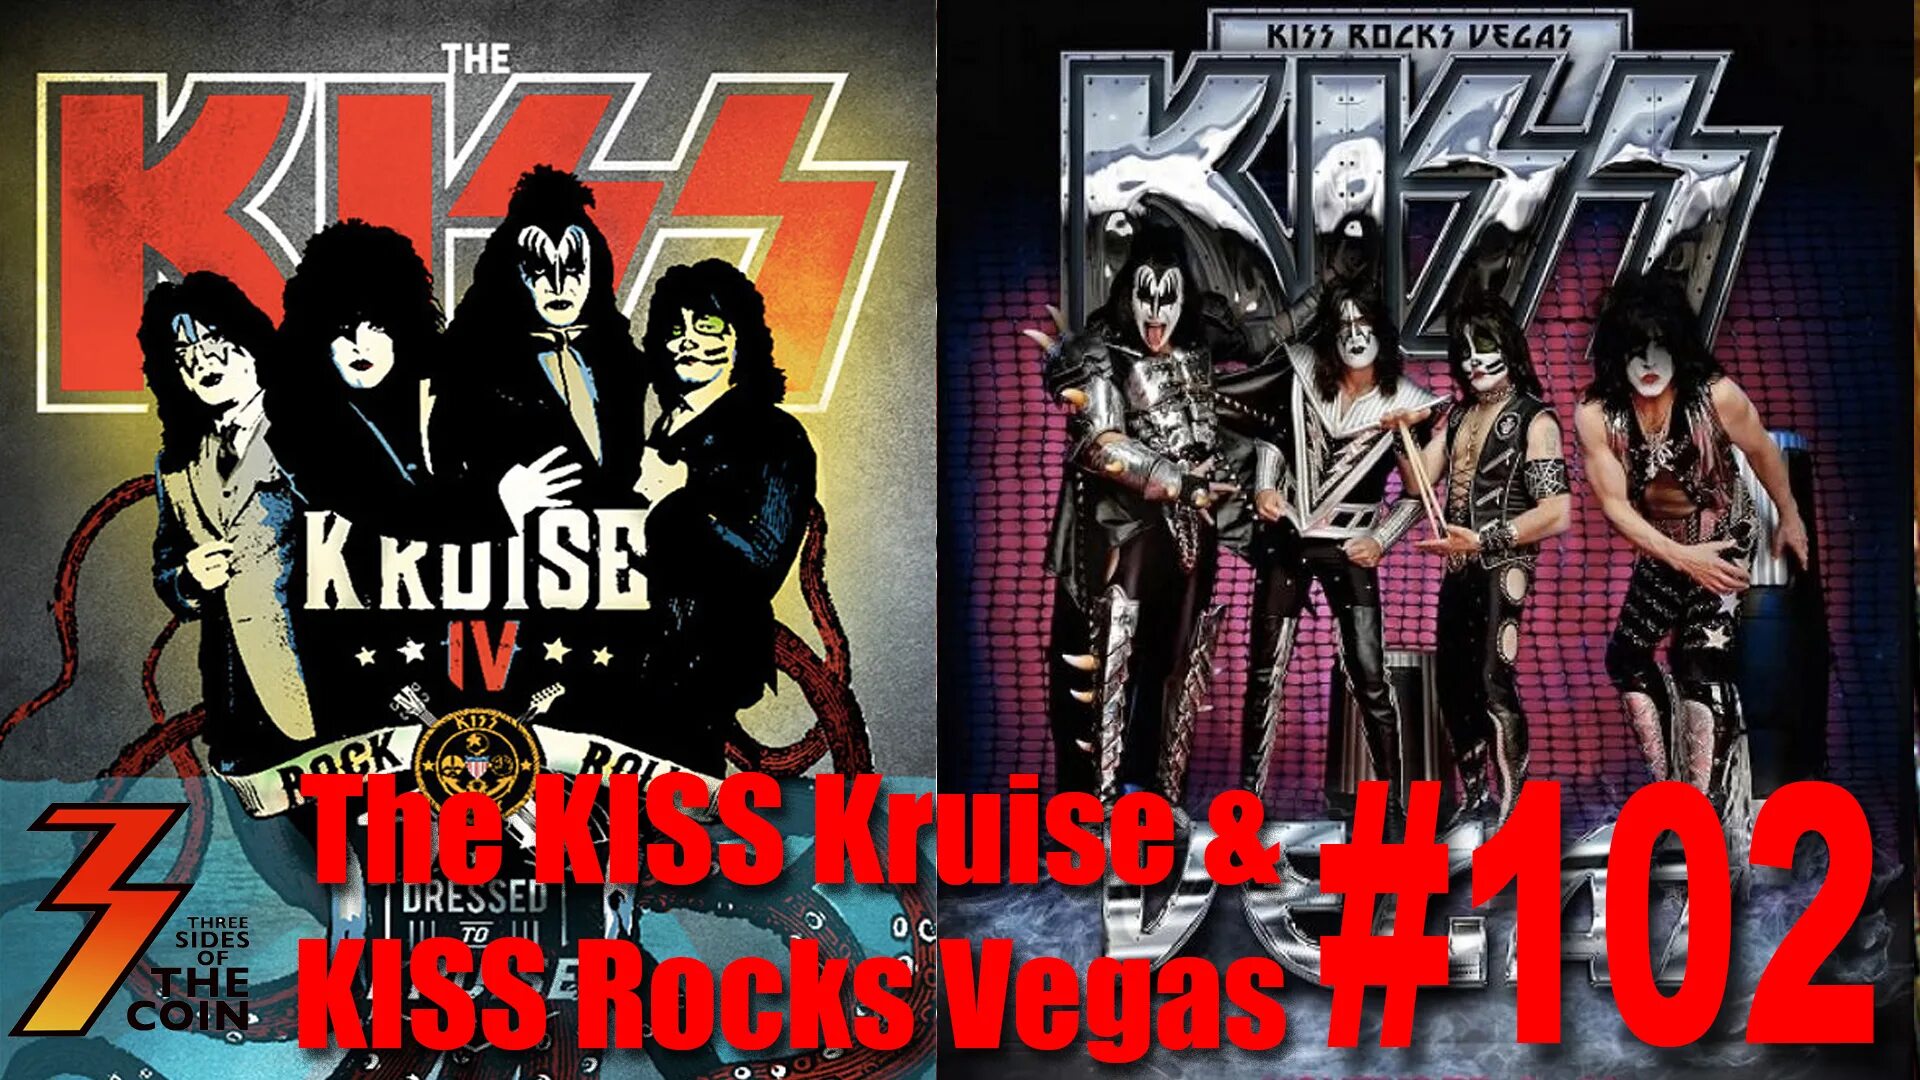 Kiss Kruise 2014. Kiss las Vegas. Группа Kiss of the Whip. Genesis three Sides Live 1982. Three sides